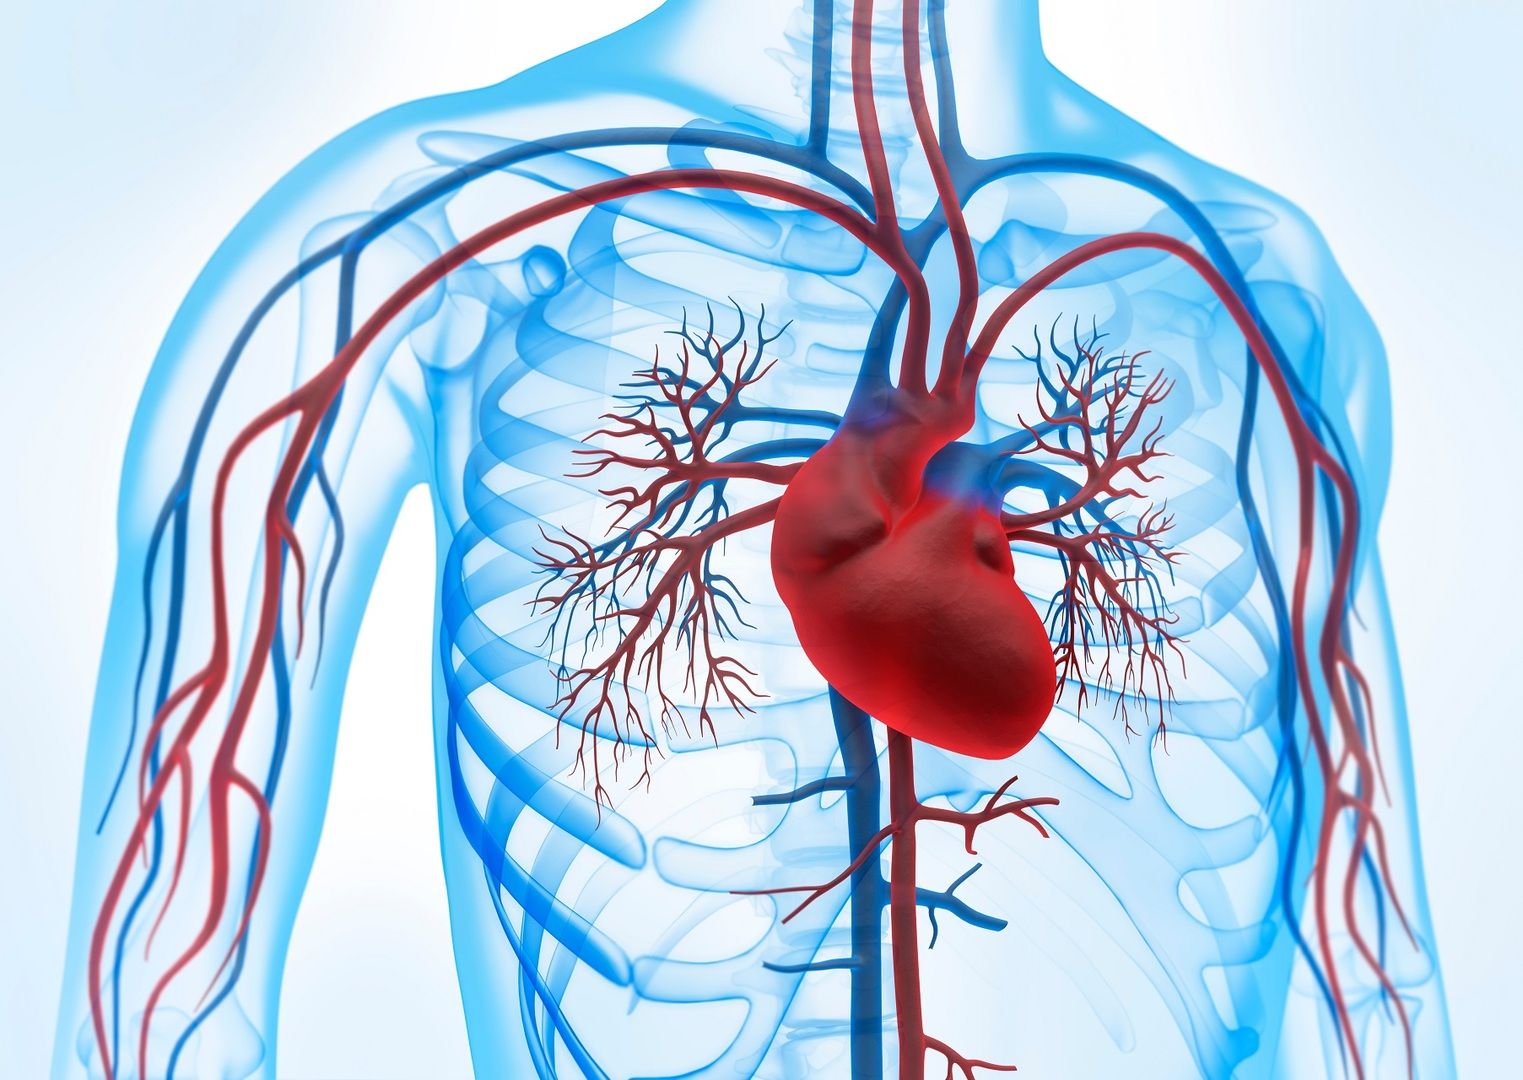 Circolazione sanguigna e illustrazione del cuore - Il nostro sistema cardiovascolare è essenziale per la nostra salute. Ma come possiamo prevenire le malattie?